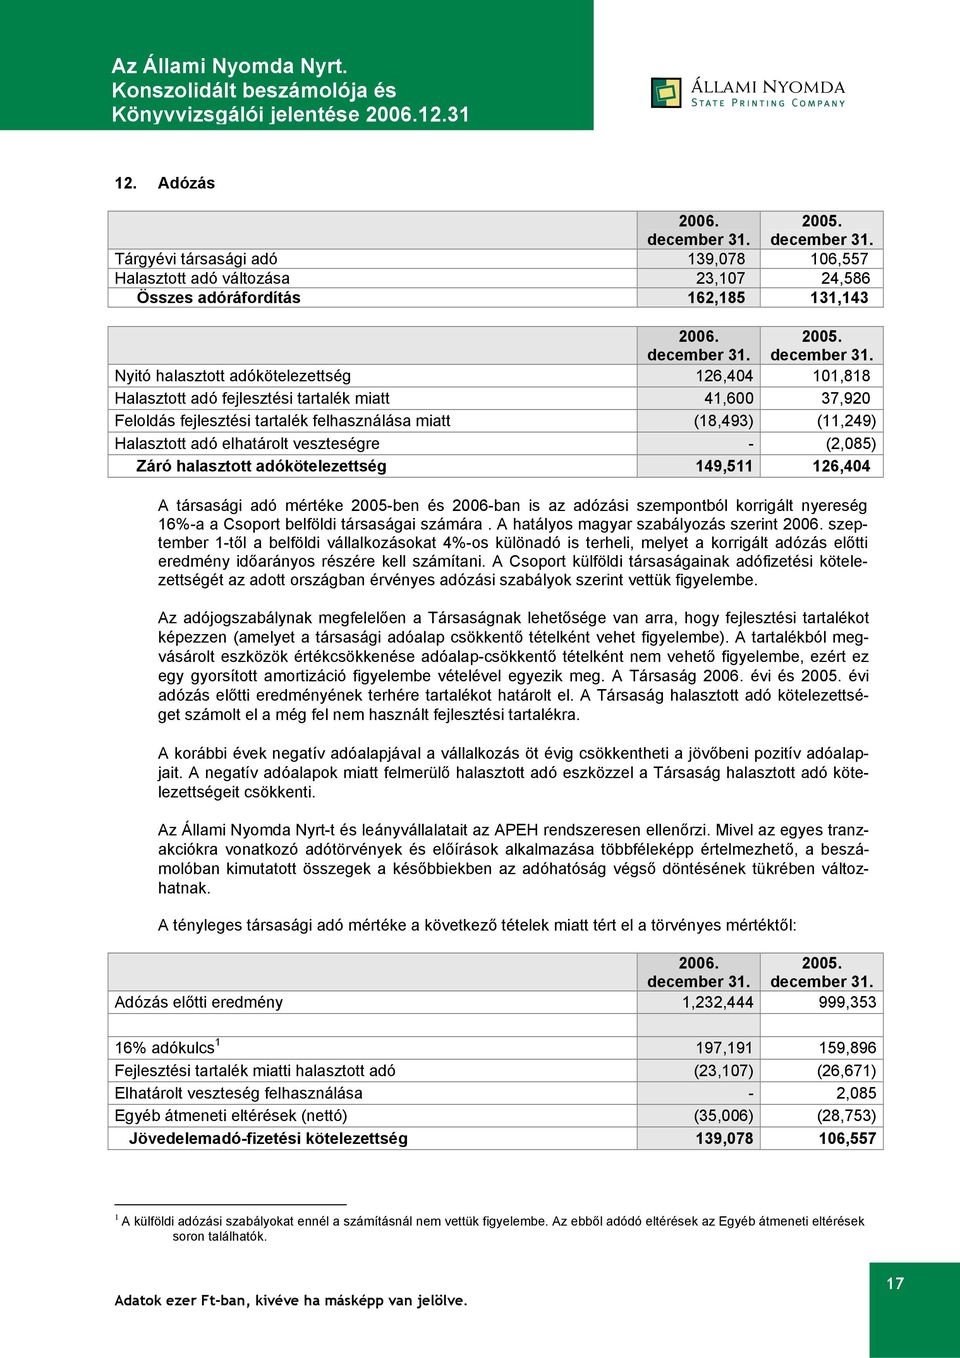 126,404 A társasági adó mértéke 2005-ben és 2006-ban is az adózási szempontból korrigált nyereség 16%-a a Csoport belföldi társaságai számára.